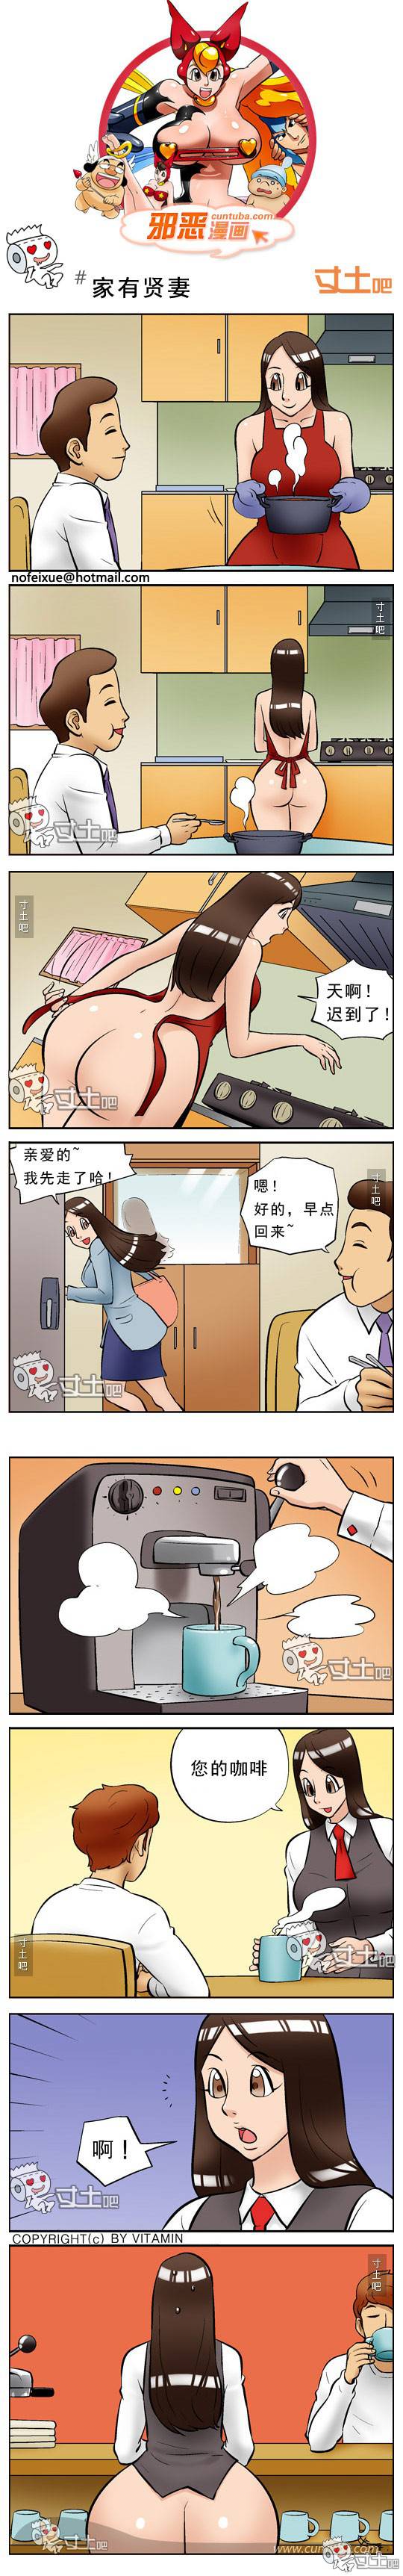 邪恶漫画爆笑囧图第228刊：诱惑